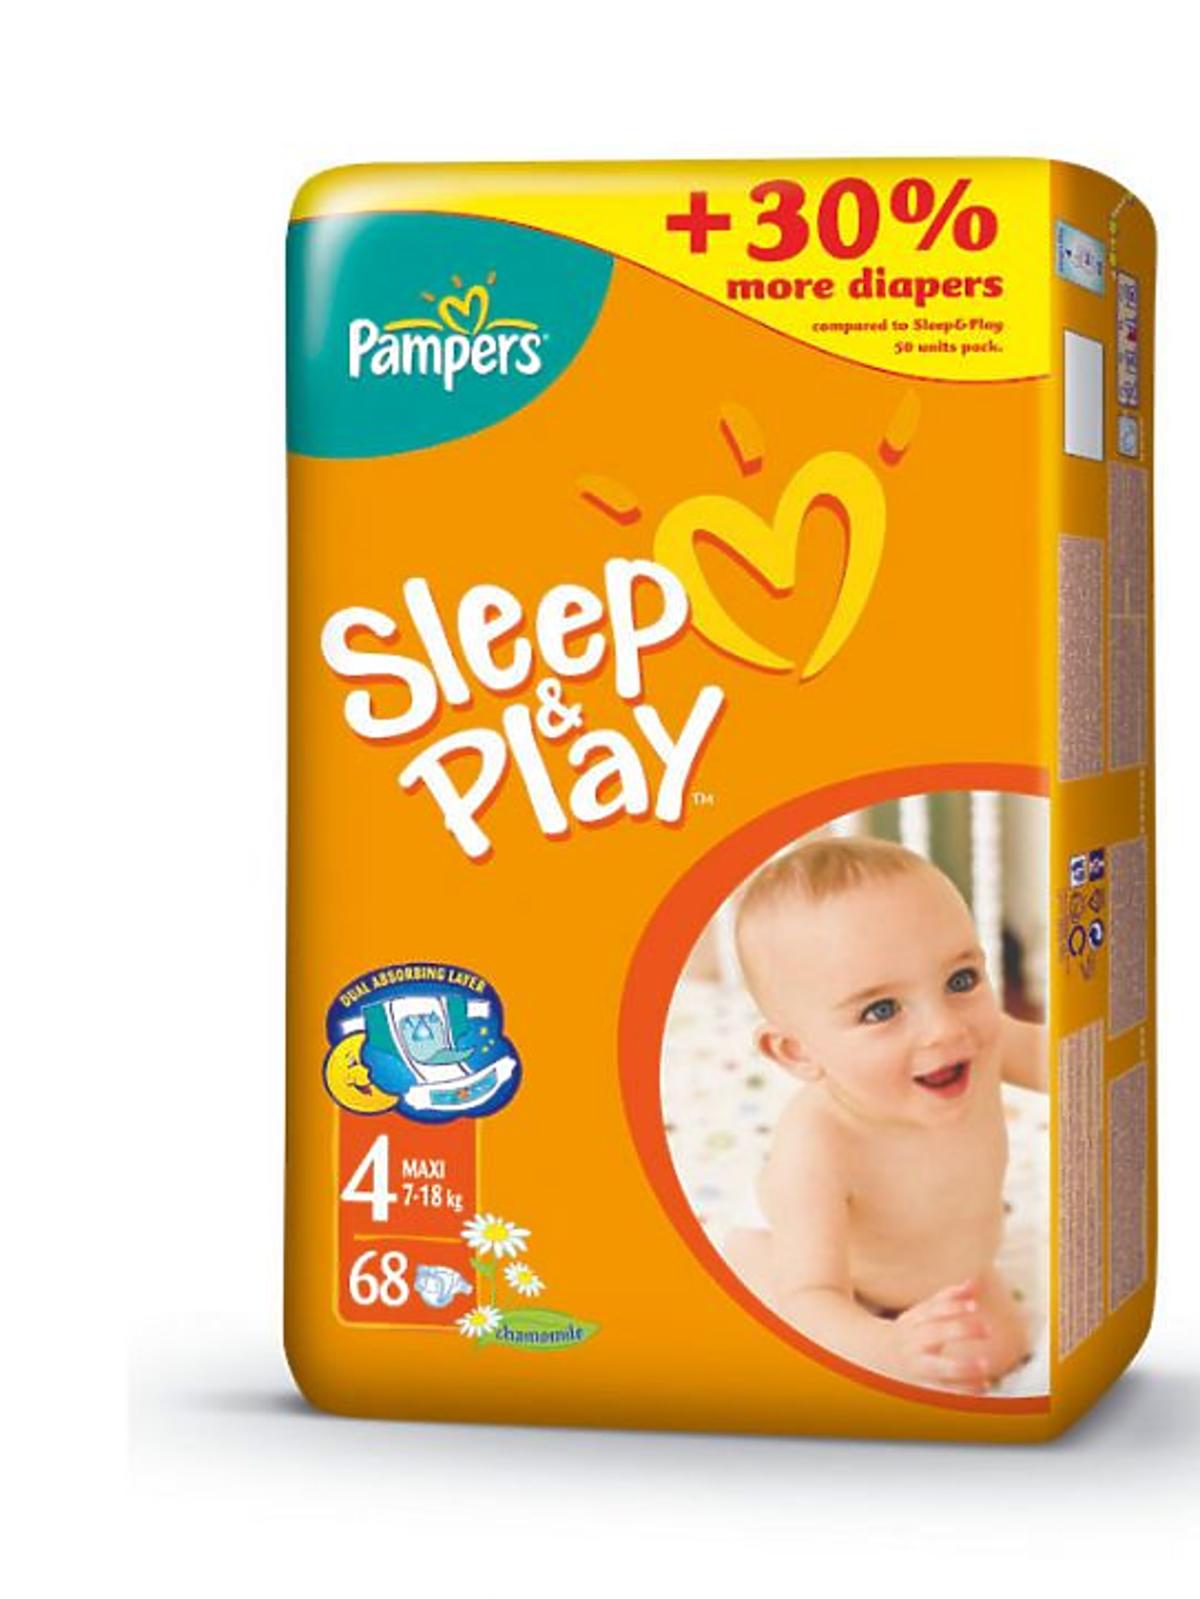 Pampers_Sleep&Play.jpg